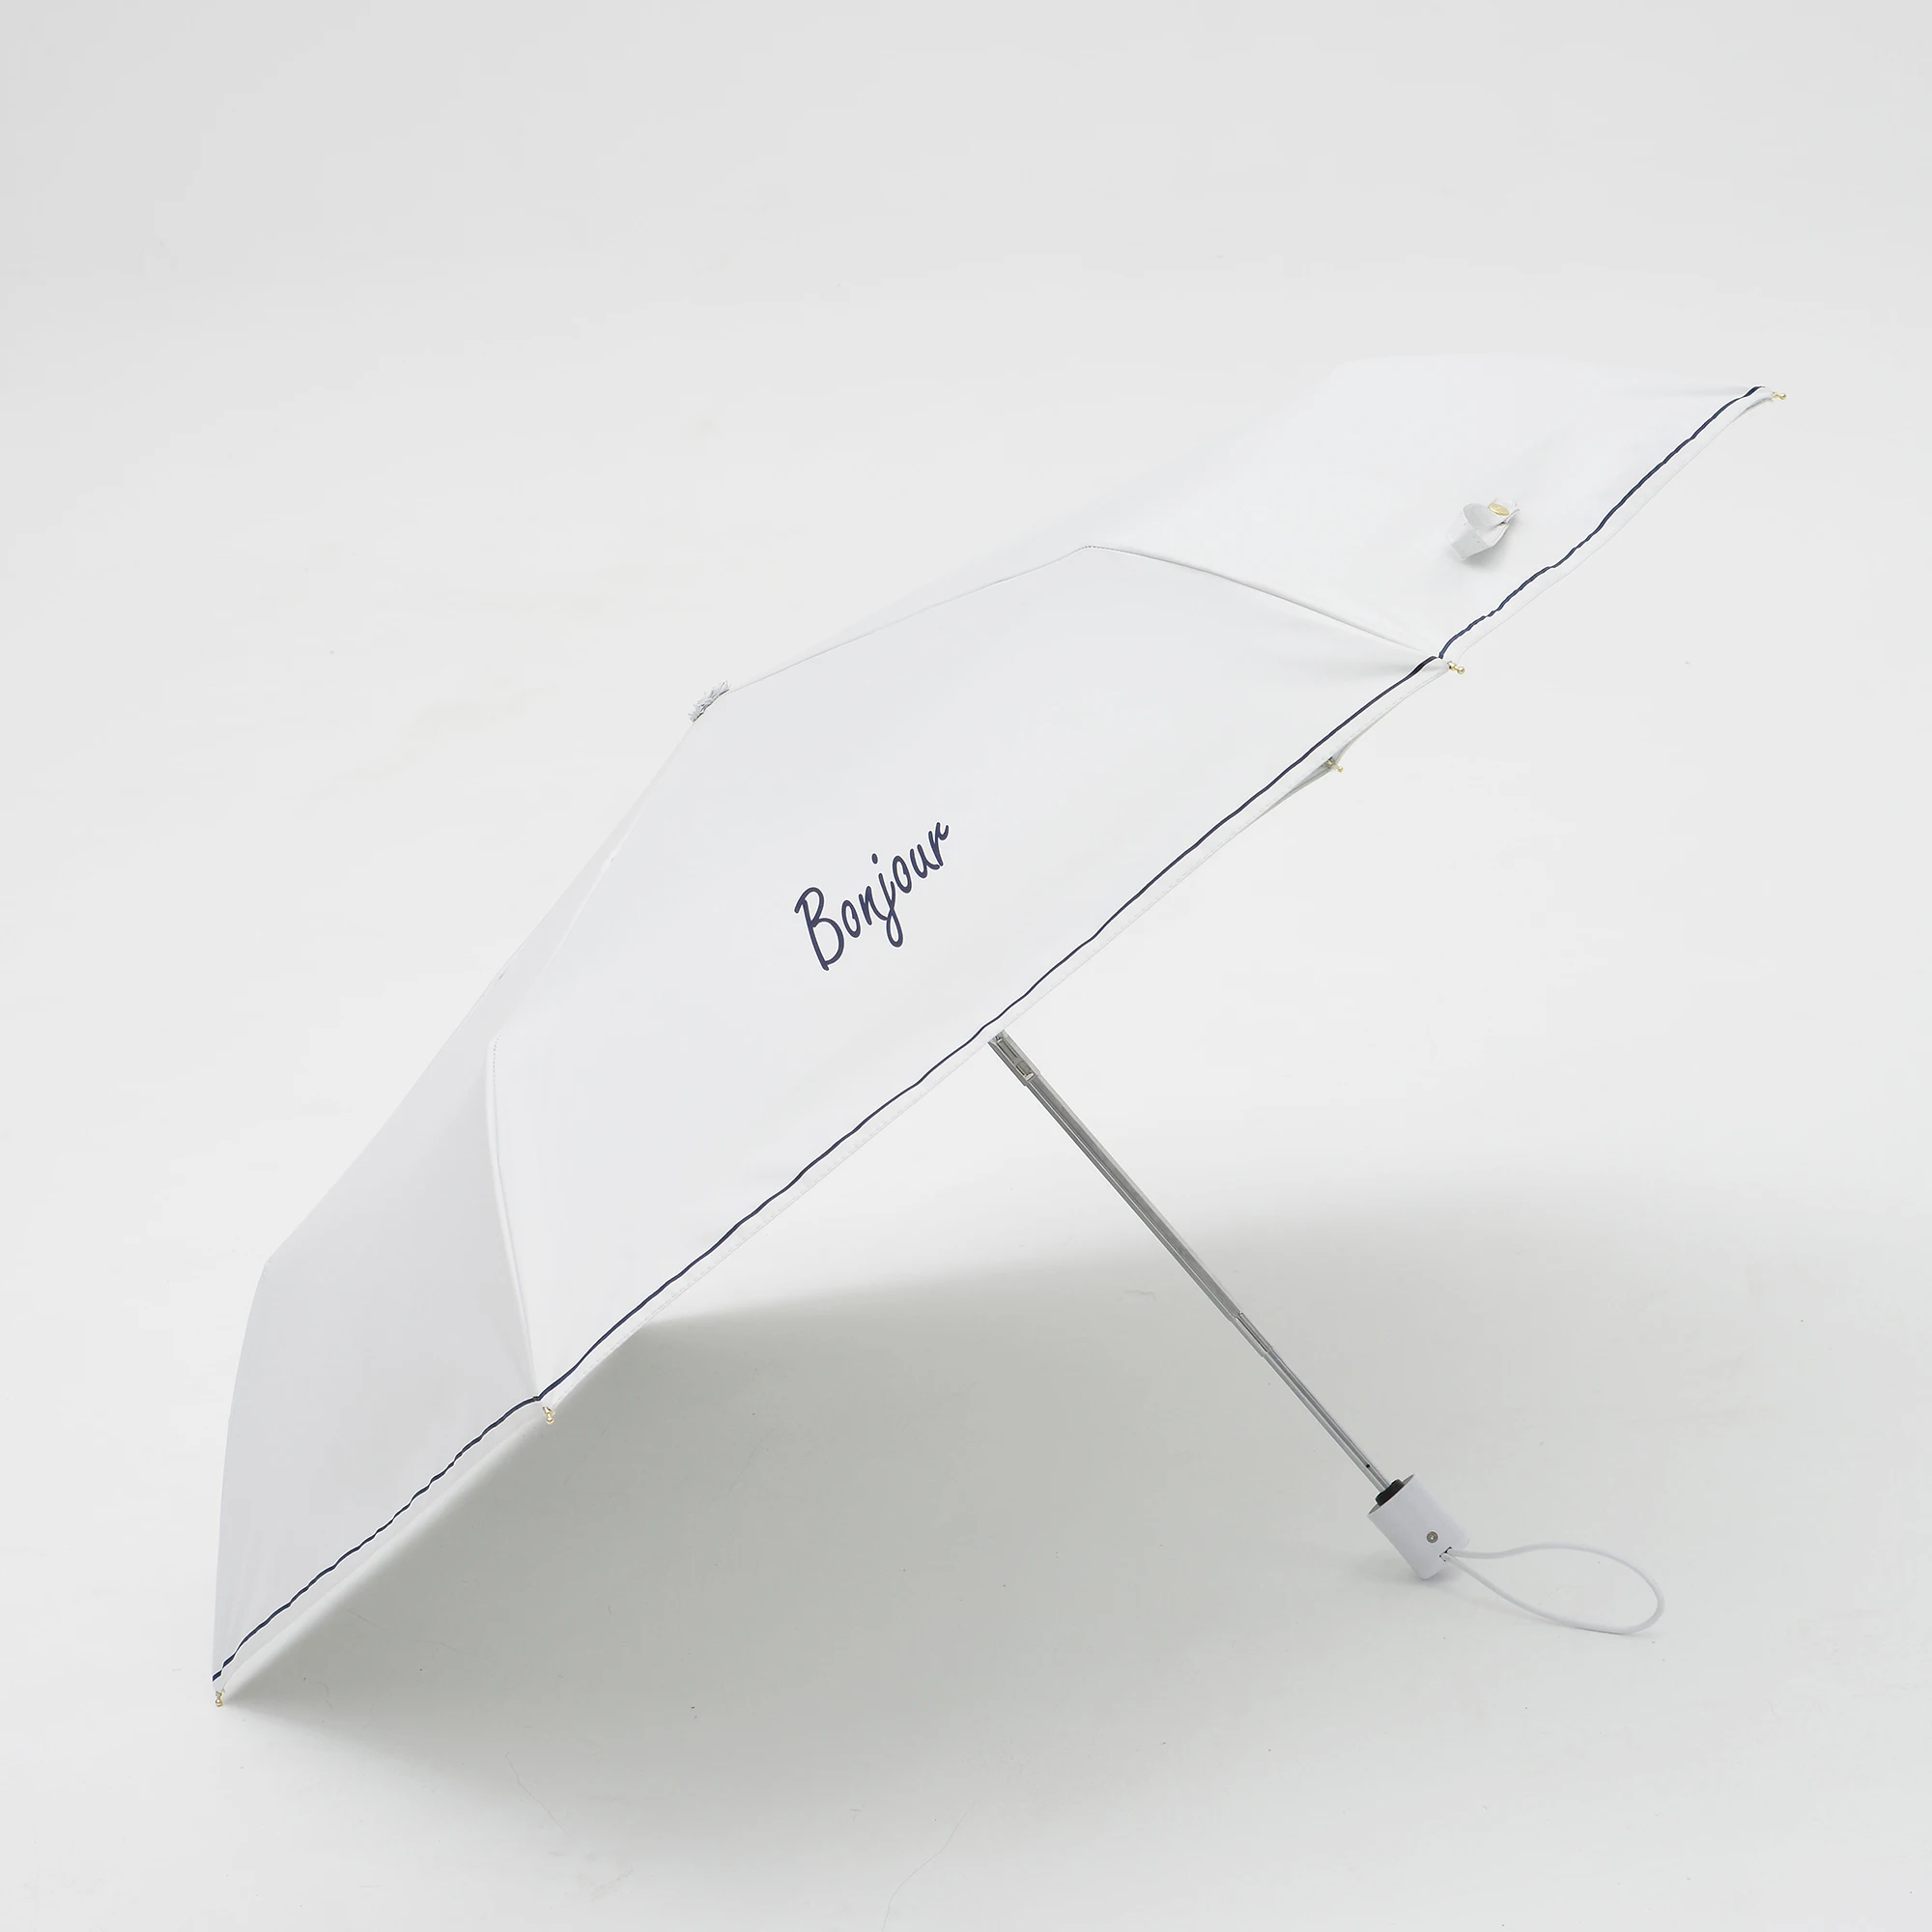 Зонт от солнца автоматический анти-УФ солнцезащитный Bonjour серии милый складной зонт дождь женщин Ультра-легкие зонтики для девочек 6K - Цвет: white